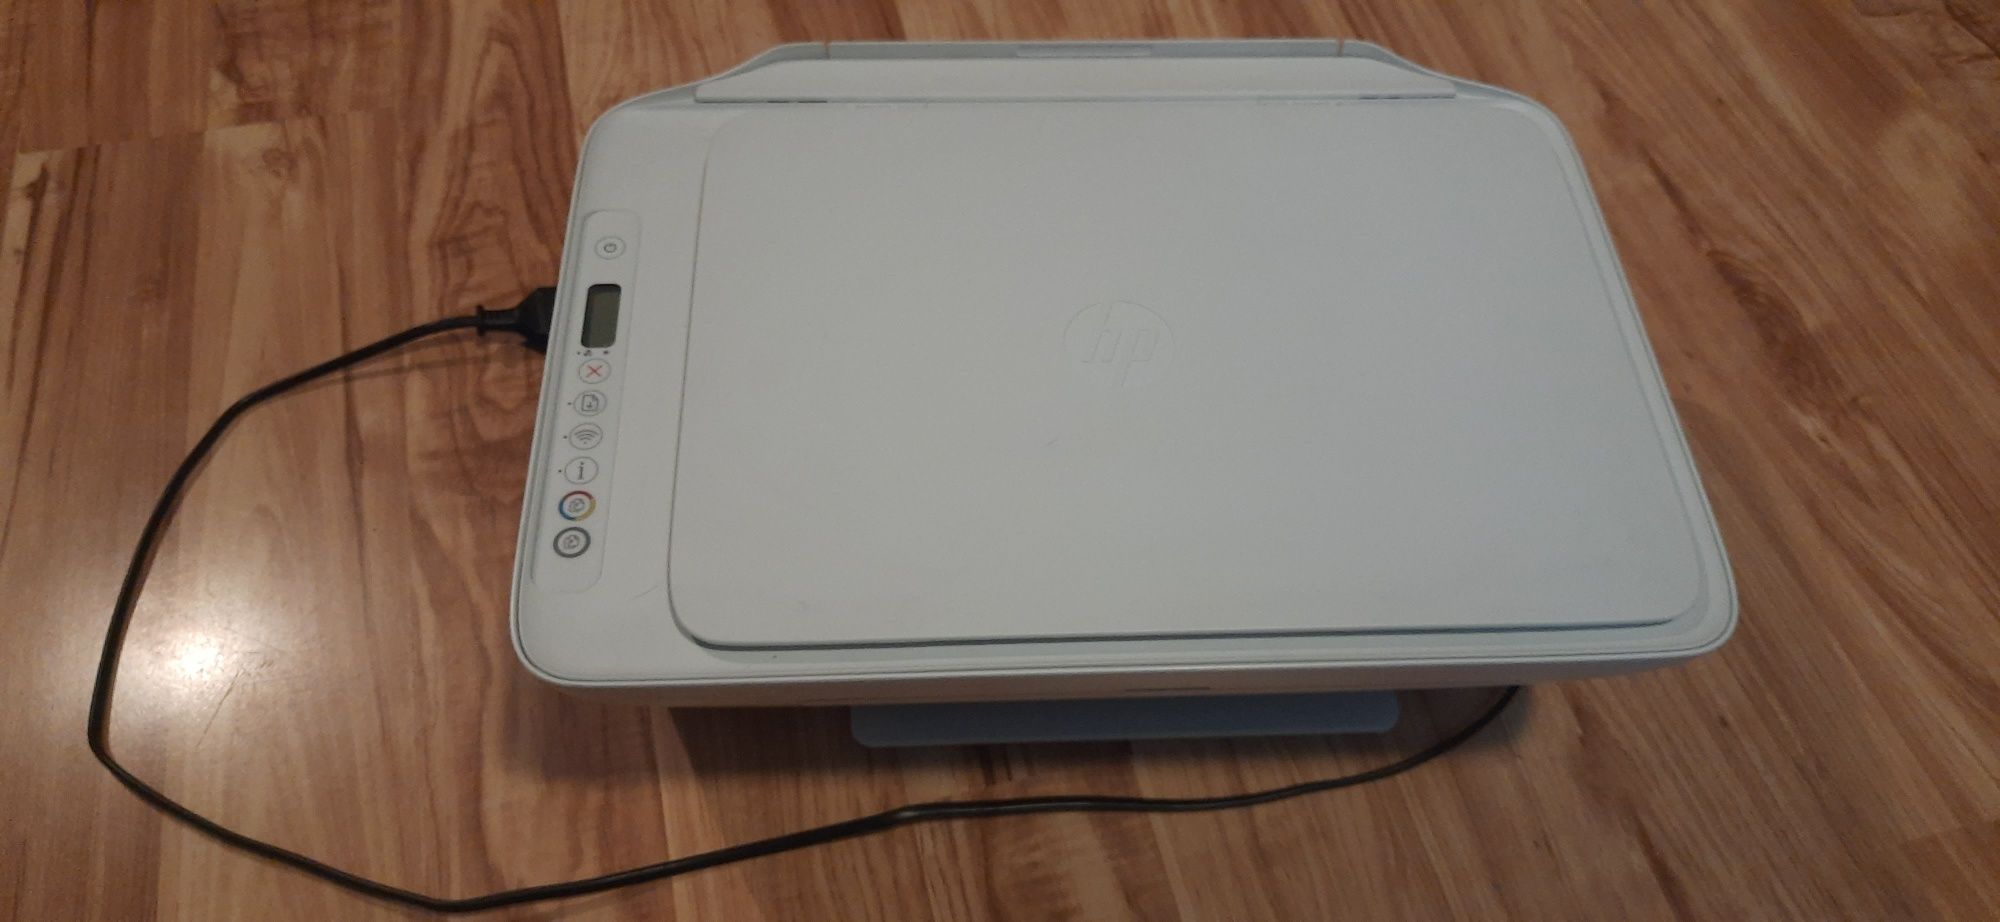 Urządzenie wielofunkcyjne drukarka HP DeskJet 2710